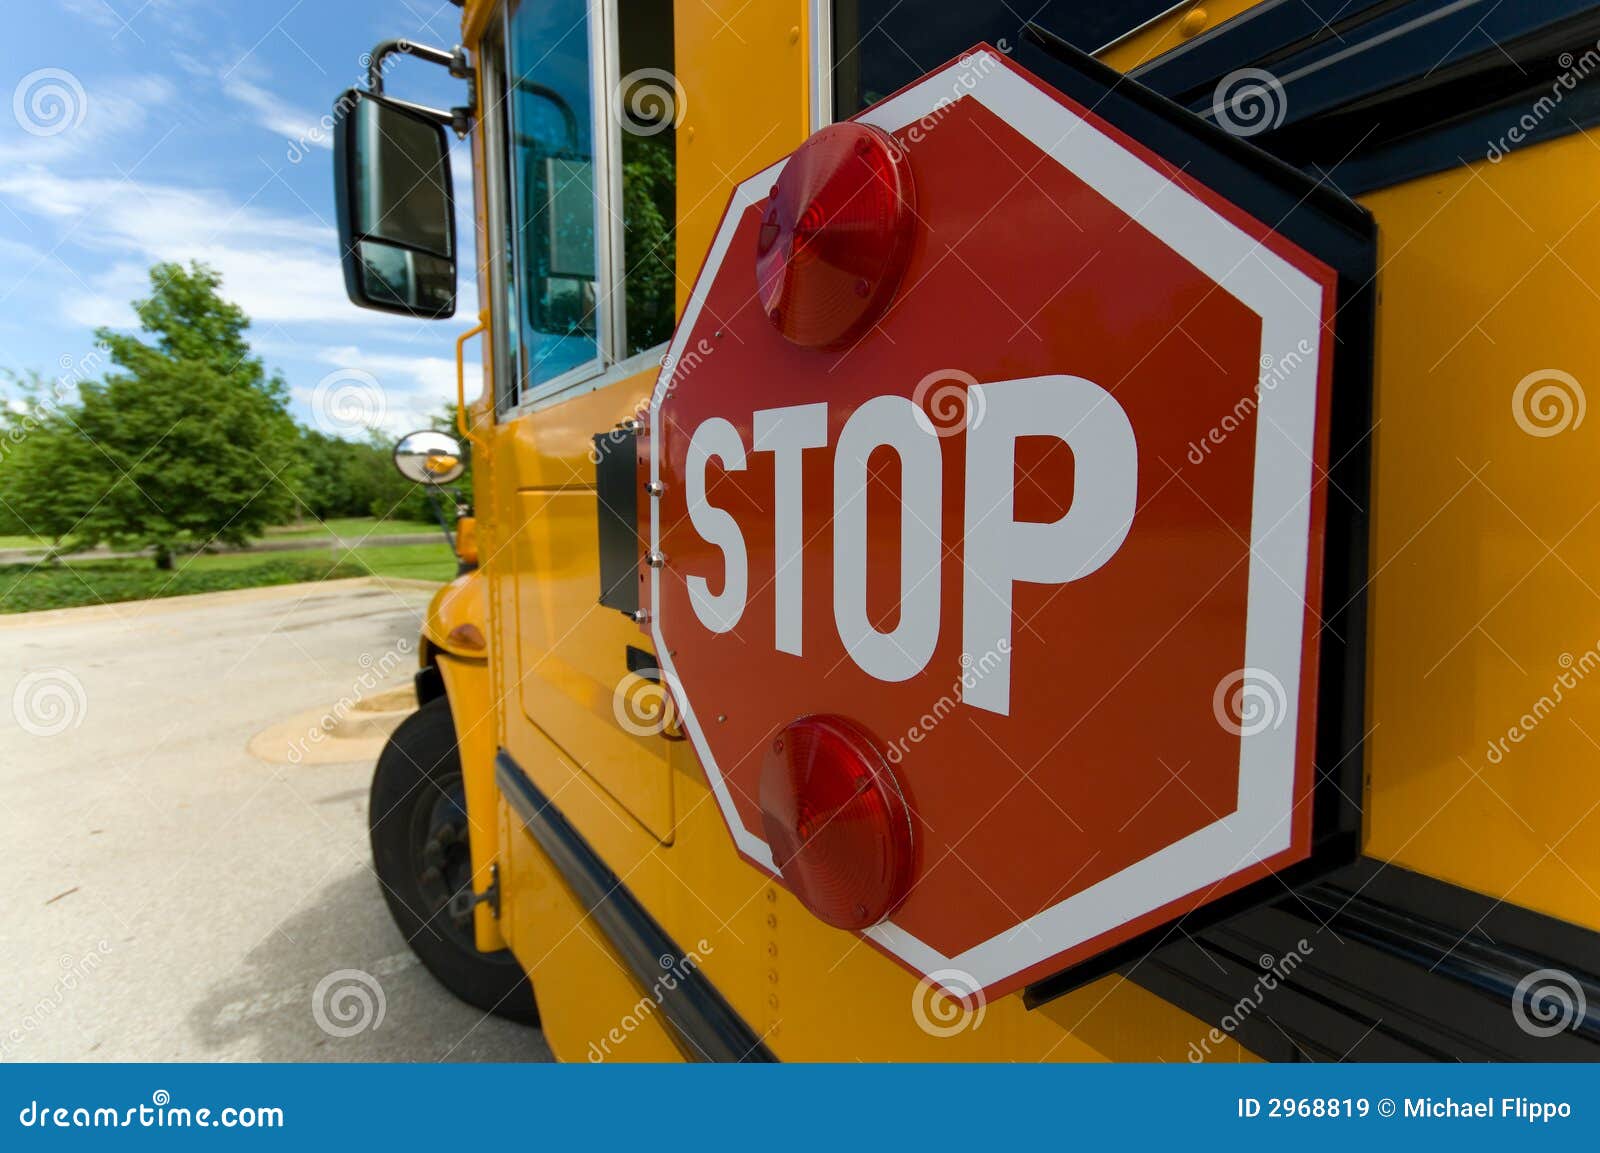 school-bus-stop-sign-2968819.jpg